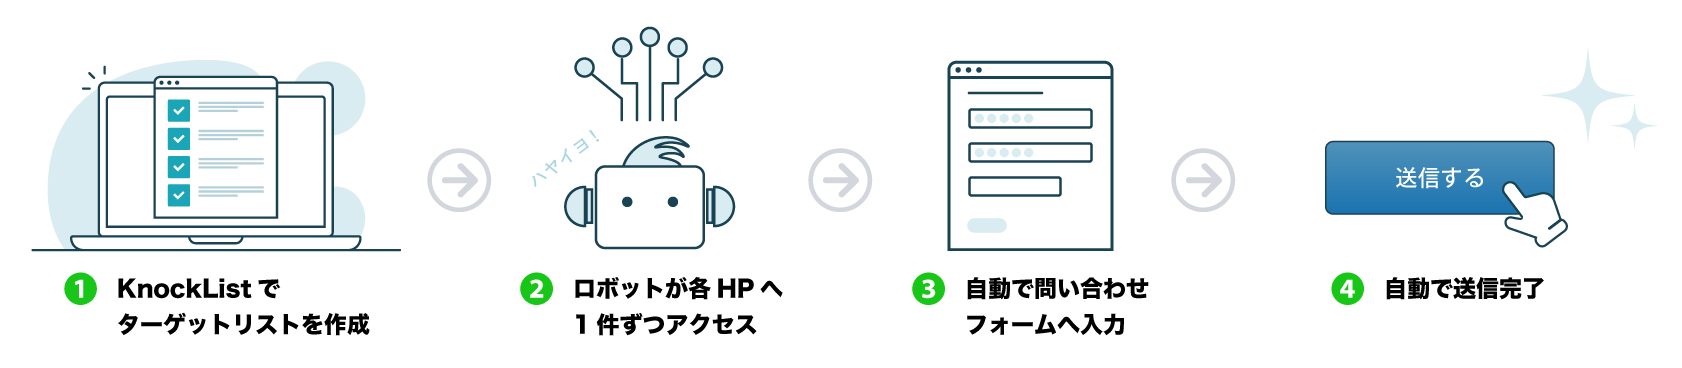 (1)KnockListでターゲットリストを作成(2)ロボットが各HPへ1件ずつアクセス(3)自動で問い合わせフォームへ入力(4)自動で送信完了！